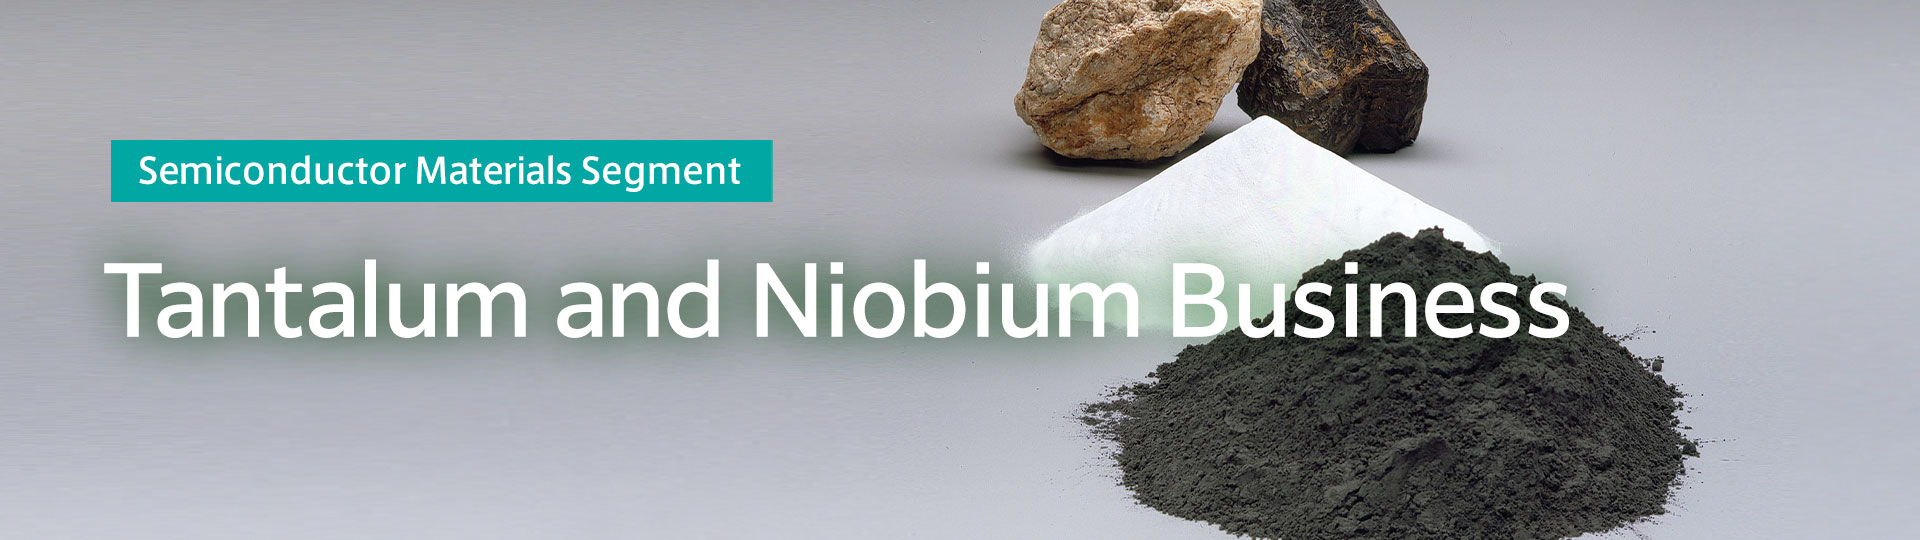 Semiconductor Materials Segment Tantalum and Niobium Business